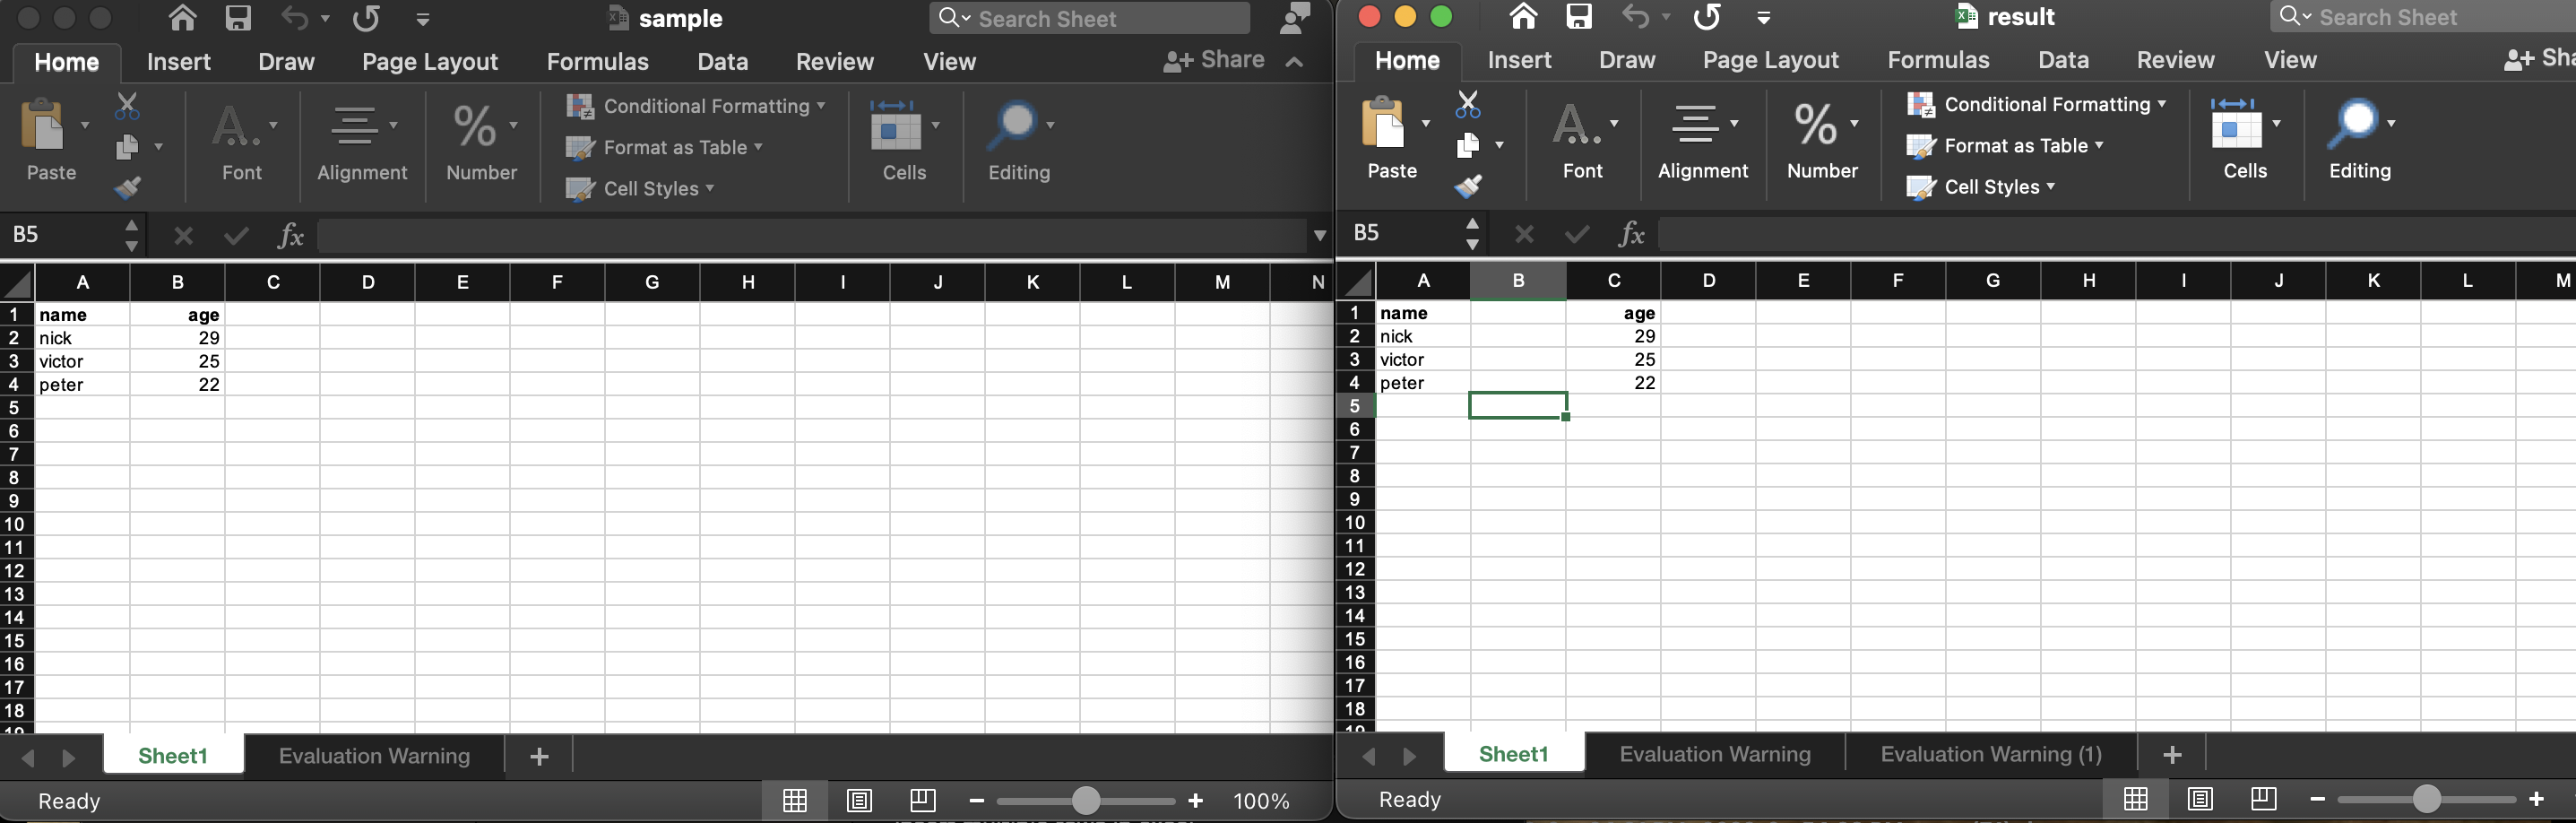 insérer des colonnes dans un fichier Excel par programmation